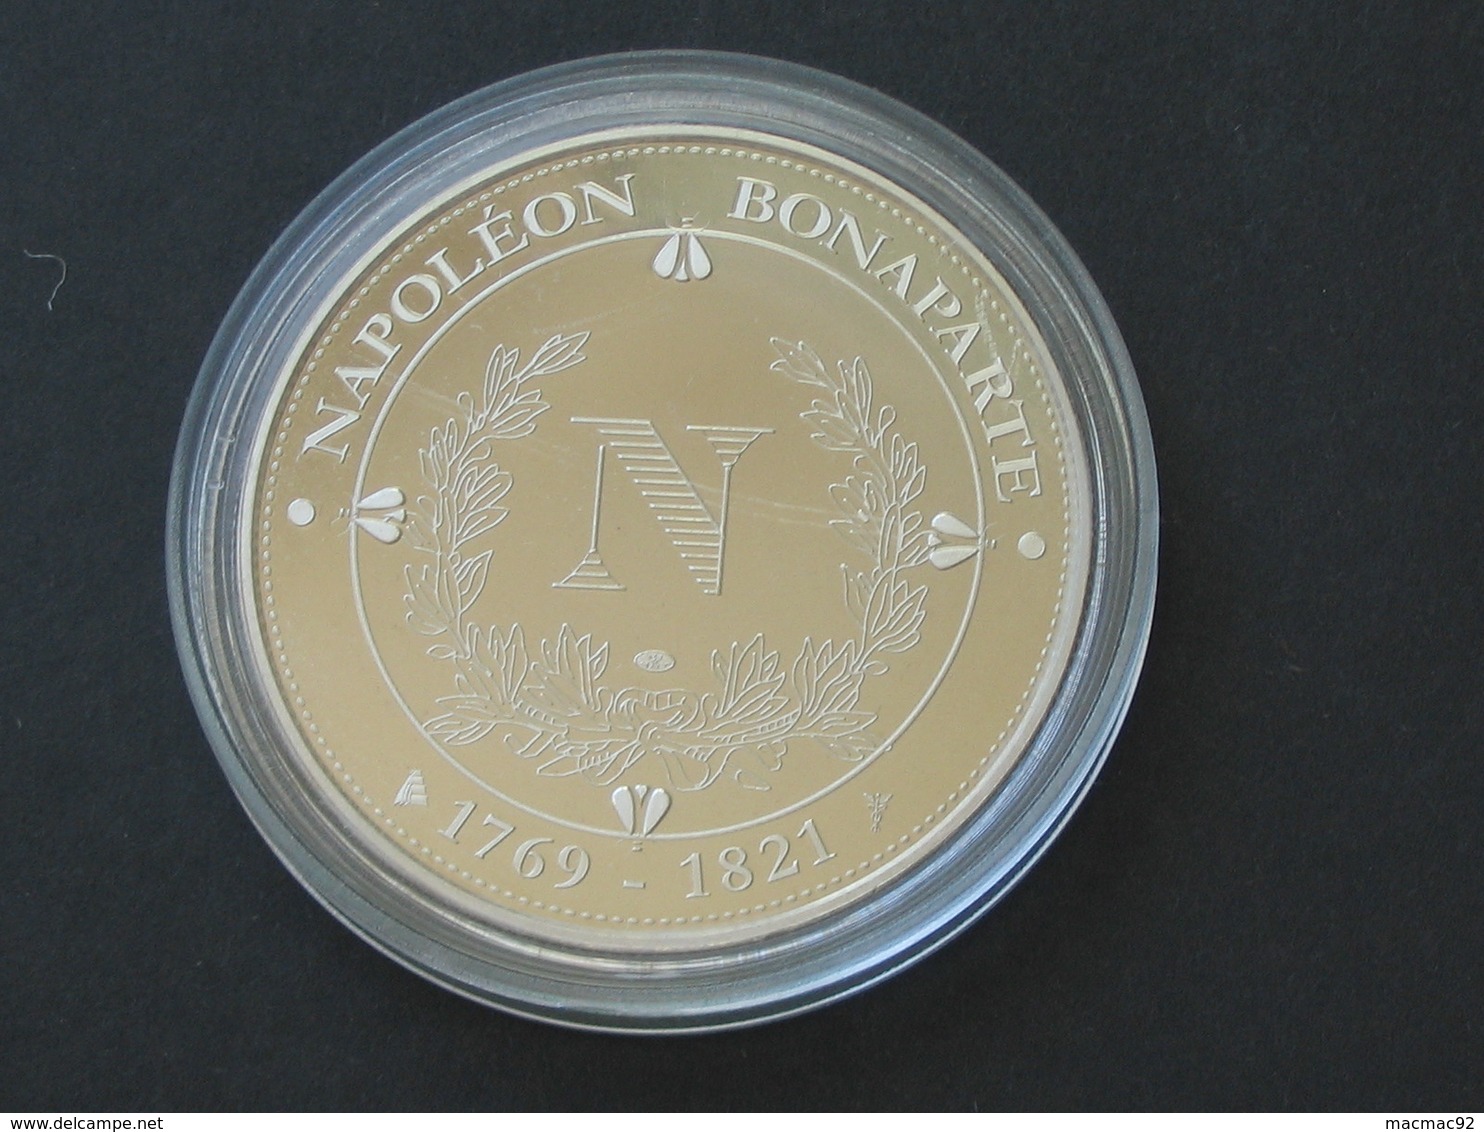 Médaille  NAPOLEON  BONAPARTE - Bataille D'AUSTERLITZ - 2 Décembre 1805  **** EN ACHAT IMMEDIAT **** - Royaux / De Noblesse